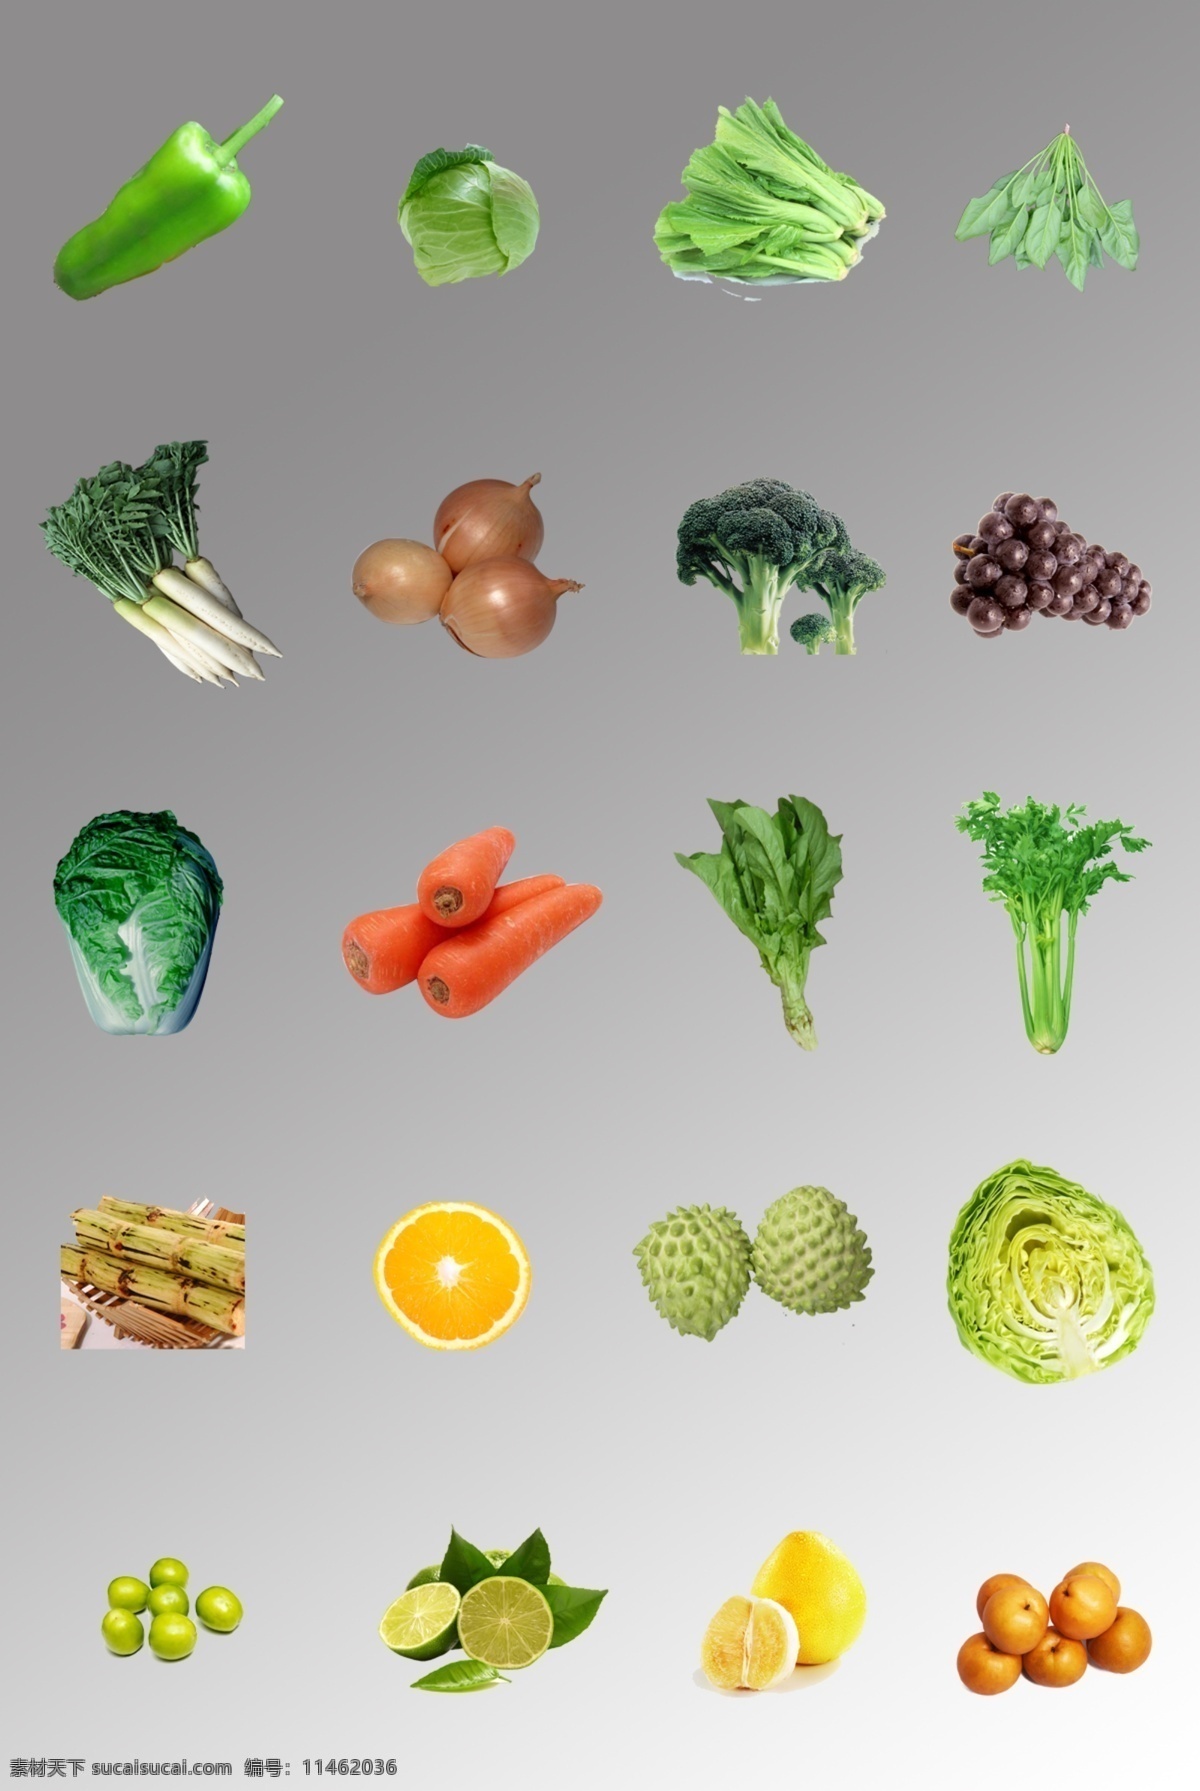 组 食物 蔬菜水果 图 蔬菜 水果 绿色 局部 设计元素 装饰